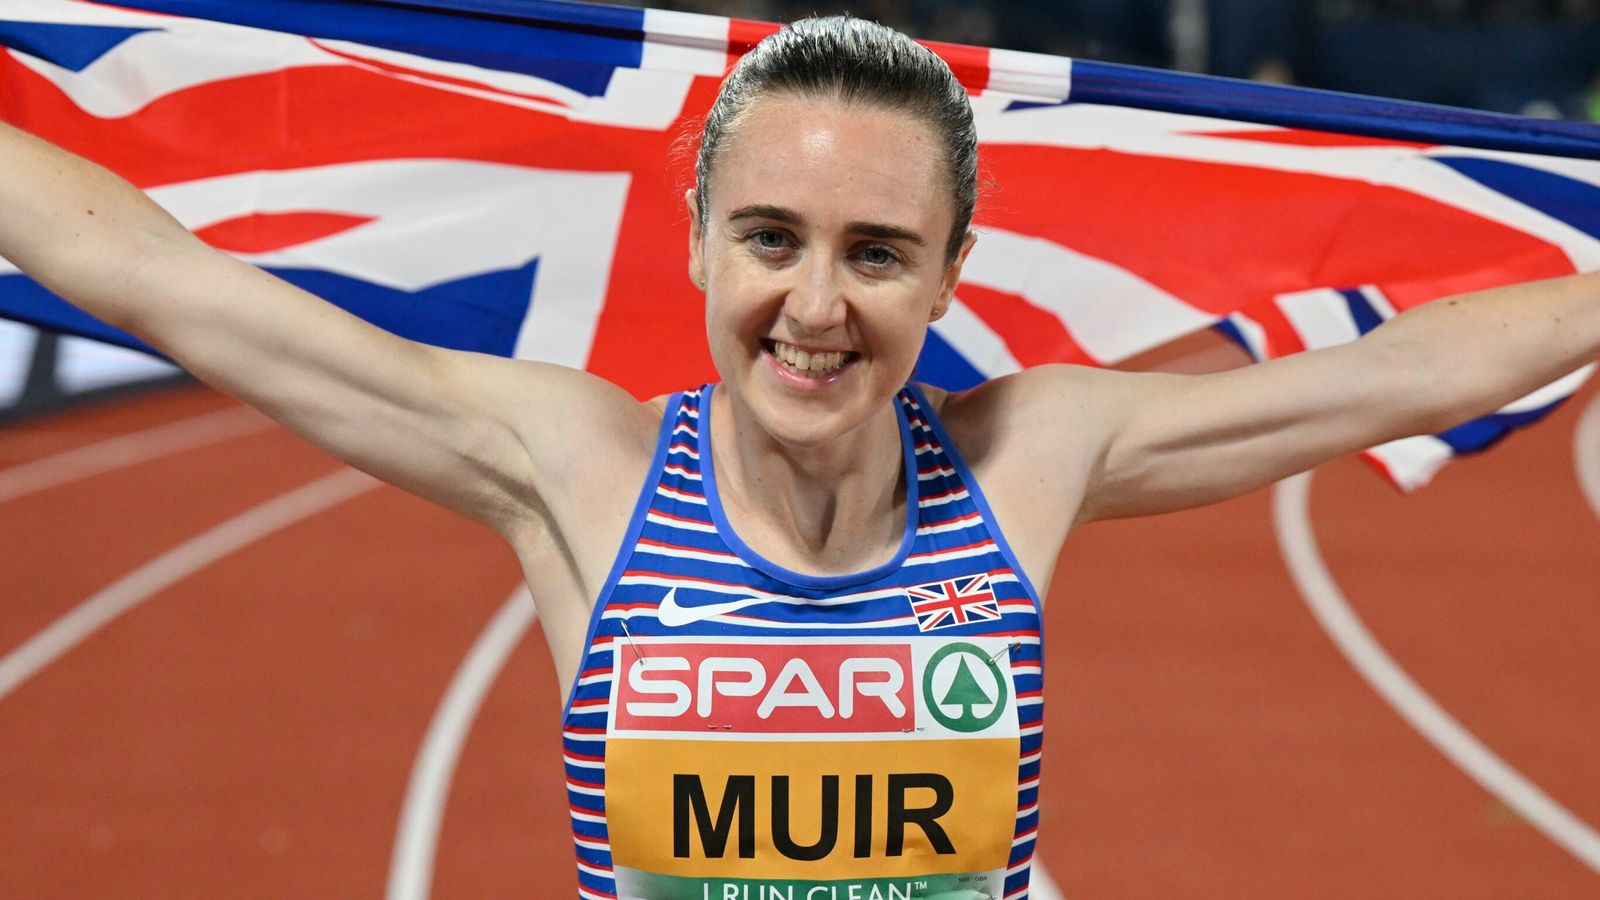 Europeos: Laura Muir gana el oro europeo en 1500m para coronar un verano ‘loco’ |  Noticias de atletismo